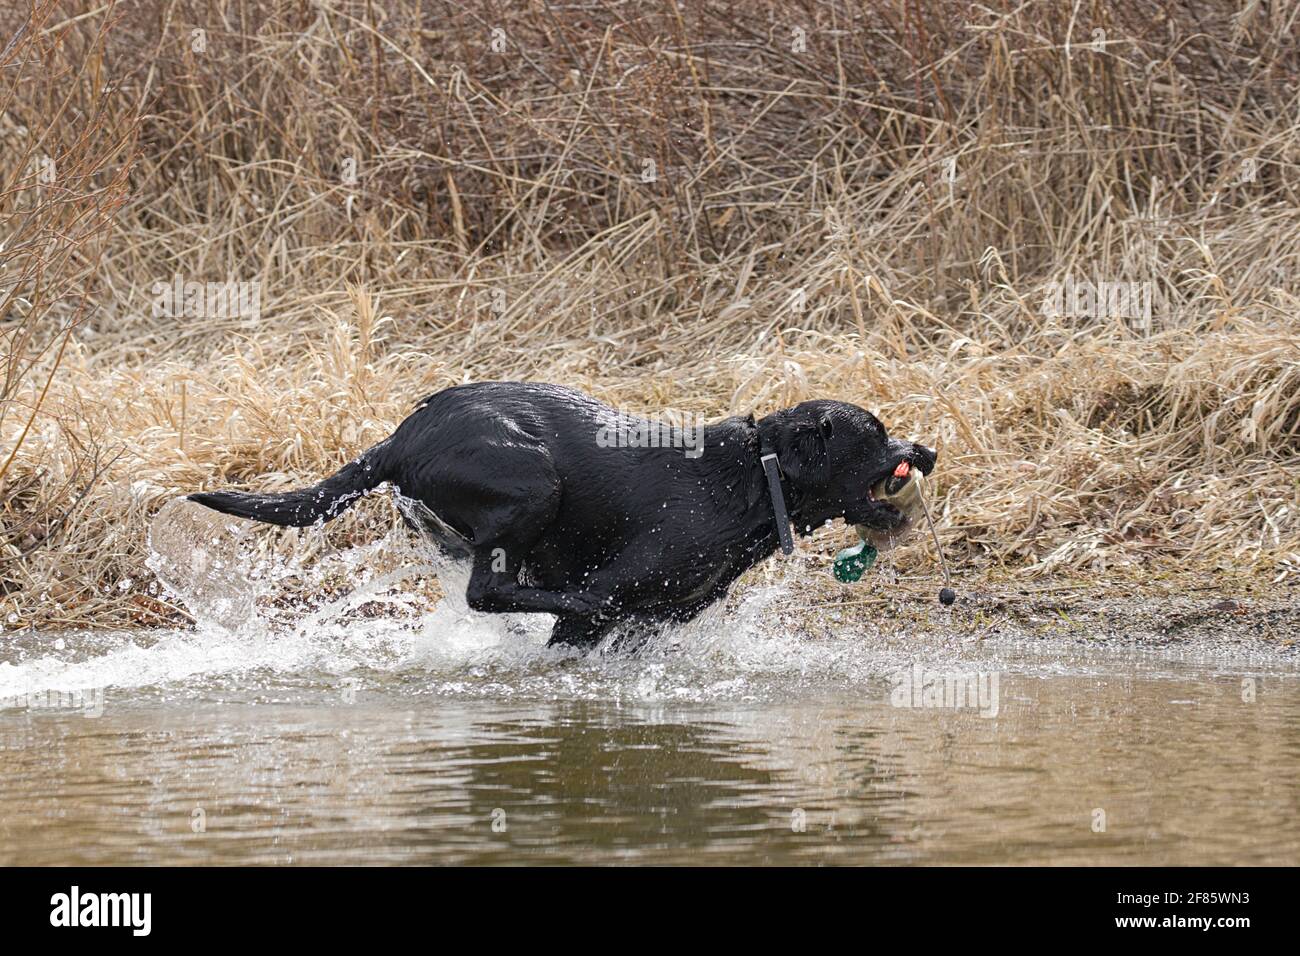 A black labrador retriever fetches a duck decoy in Hauser Lake, Idaho. Stock Photo